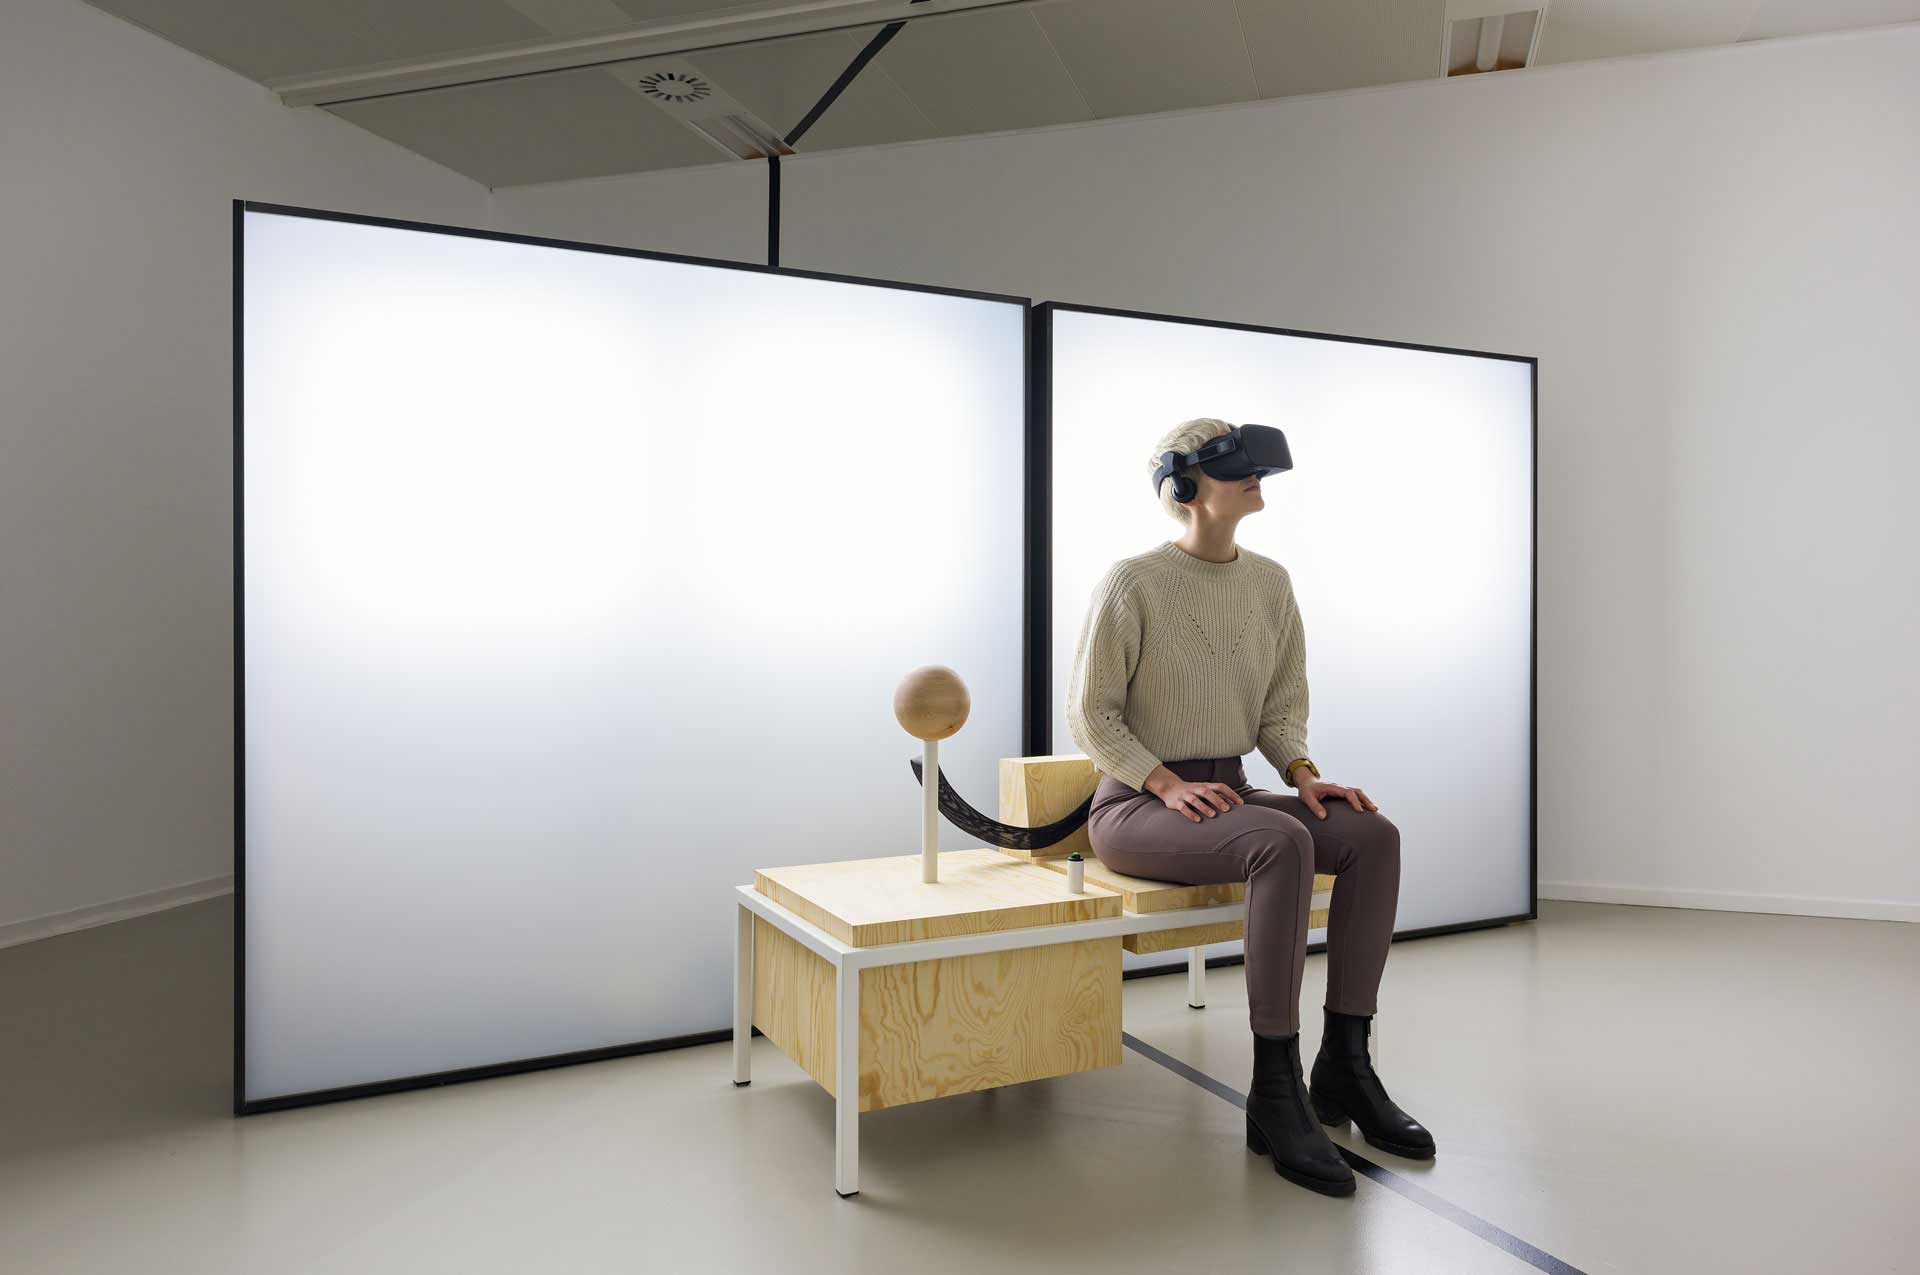 VR-Ruimte Literatuur Museum, Den Haag,  werk van Jos Blom en Joh